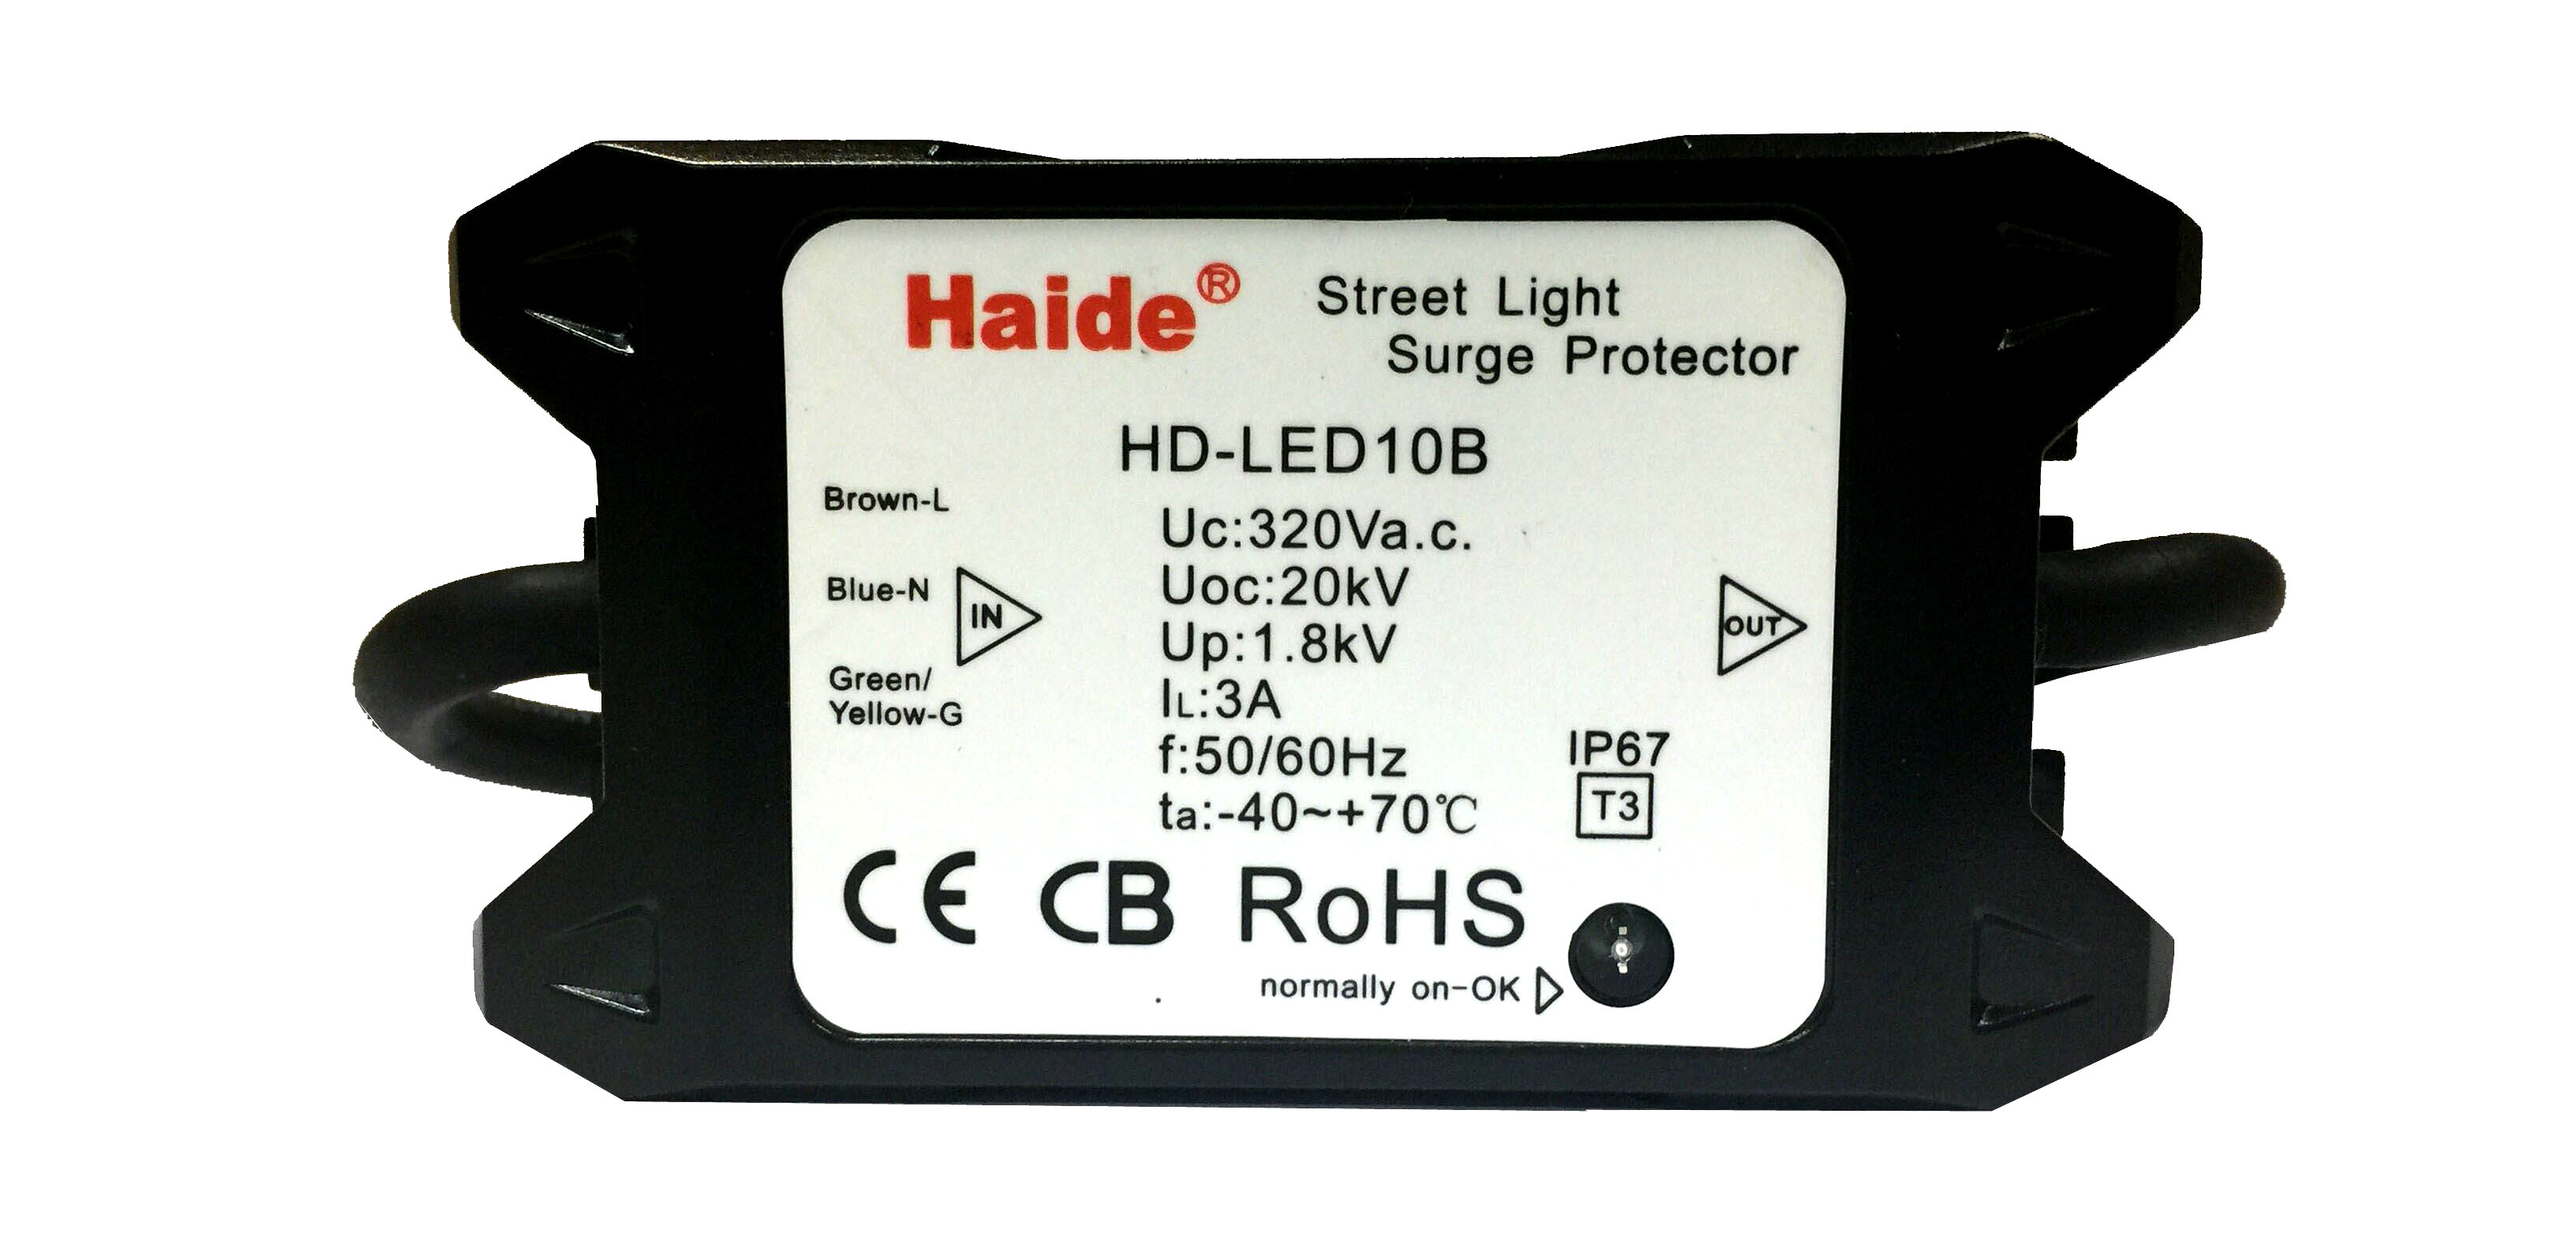 LED street light lightning arrester HD-LED10B